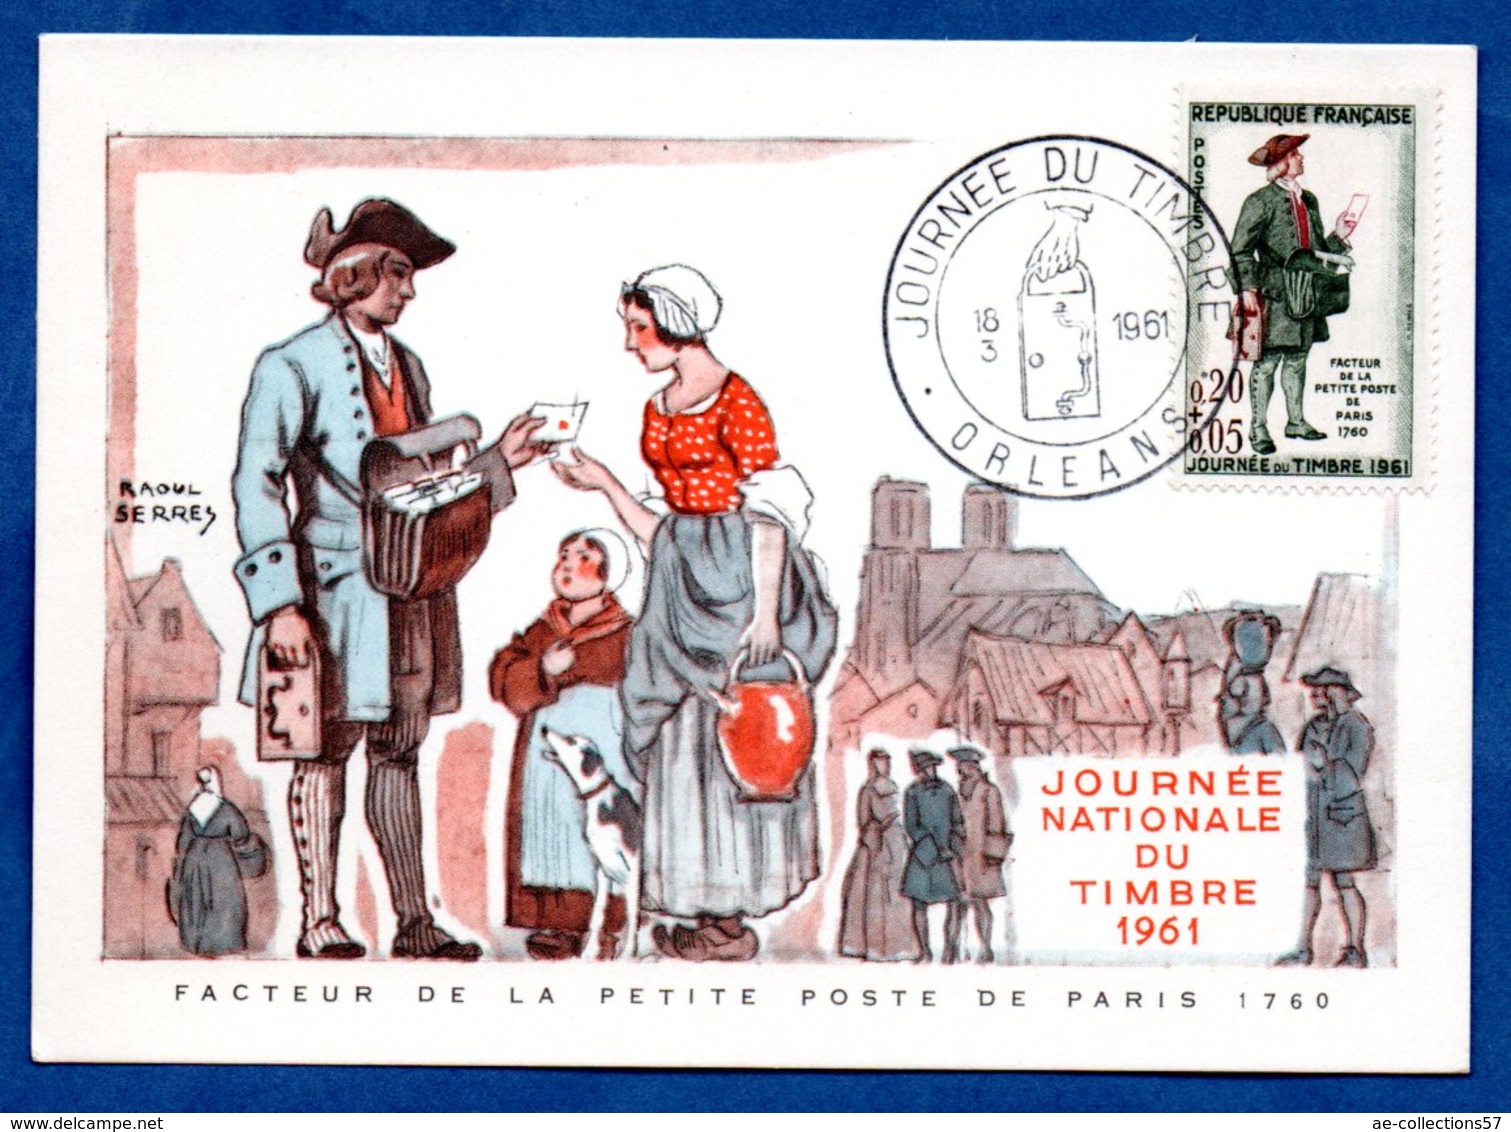 Carte Premier Jour  / Facteur De La Petite Poste De Paris 1760 / Orléans /  18-03-1961 - 1960-1969